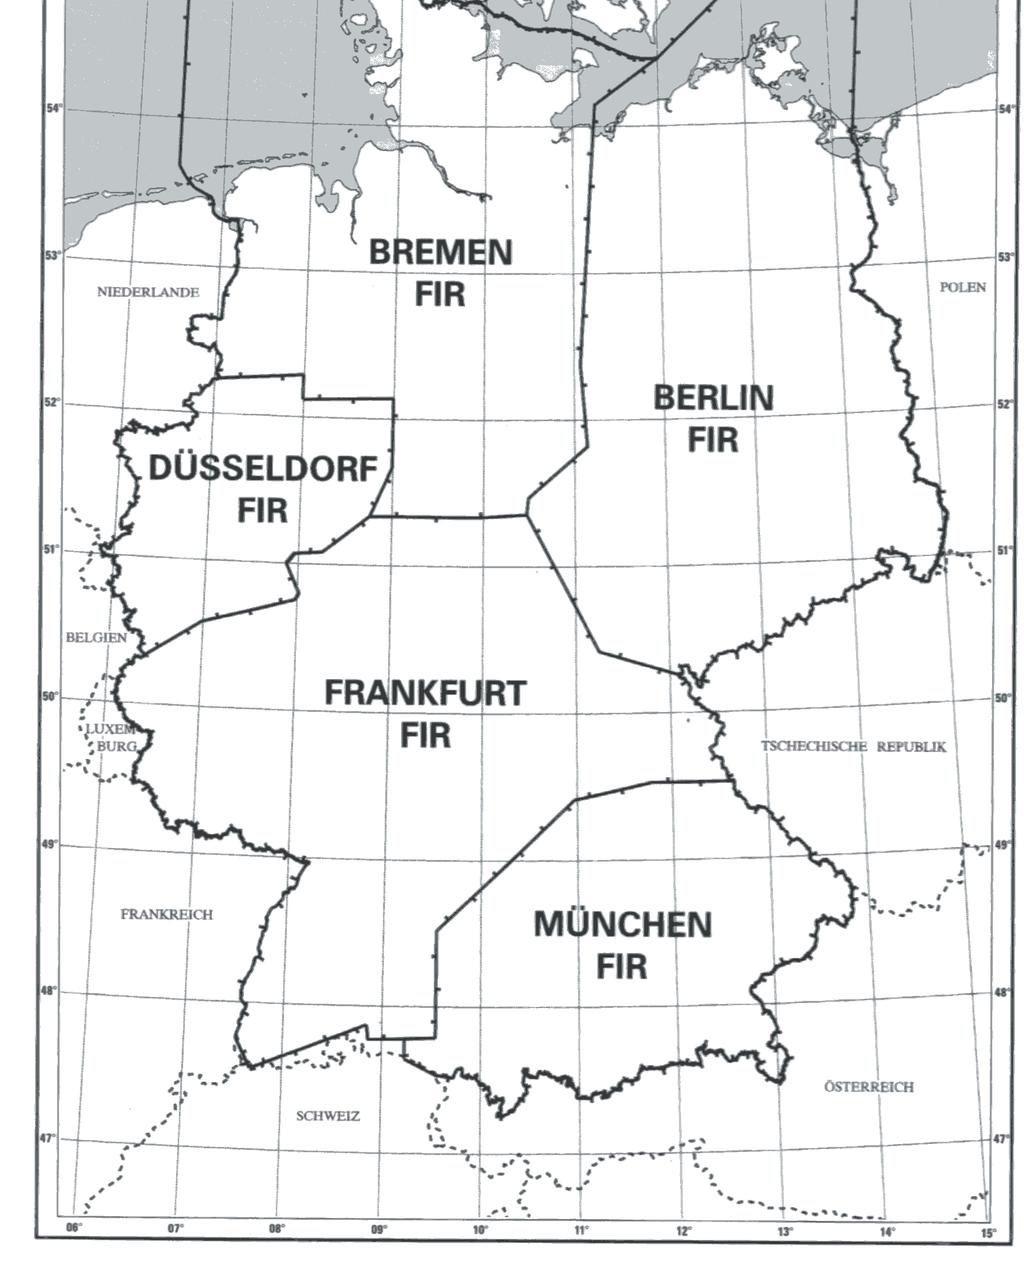 Fluginformationsgebiete: Berlin FIR Bremen FIR Düsseldorf FIR Frankfurt FIR